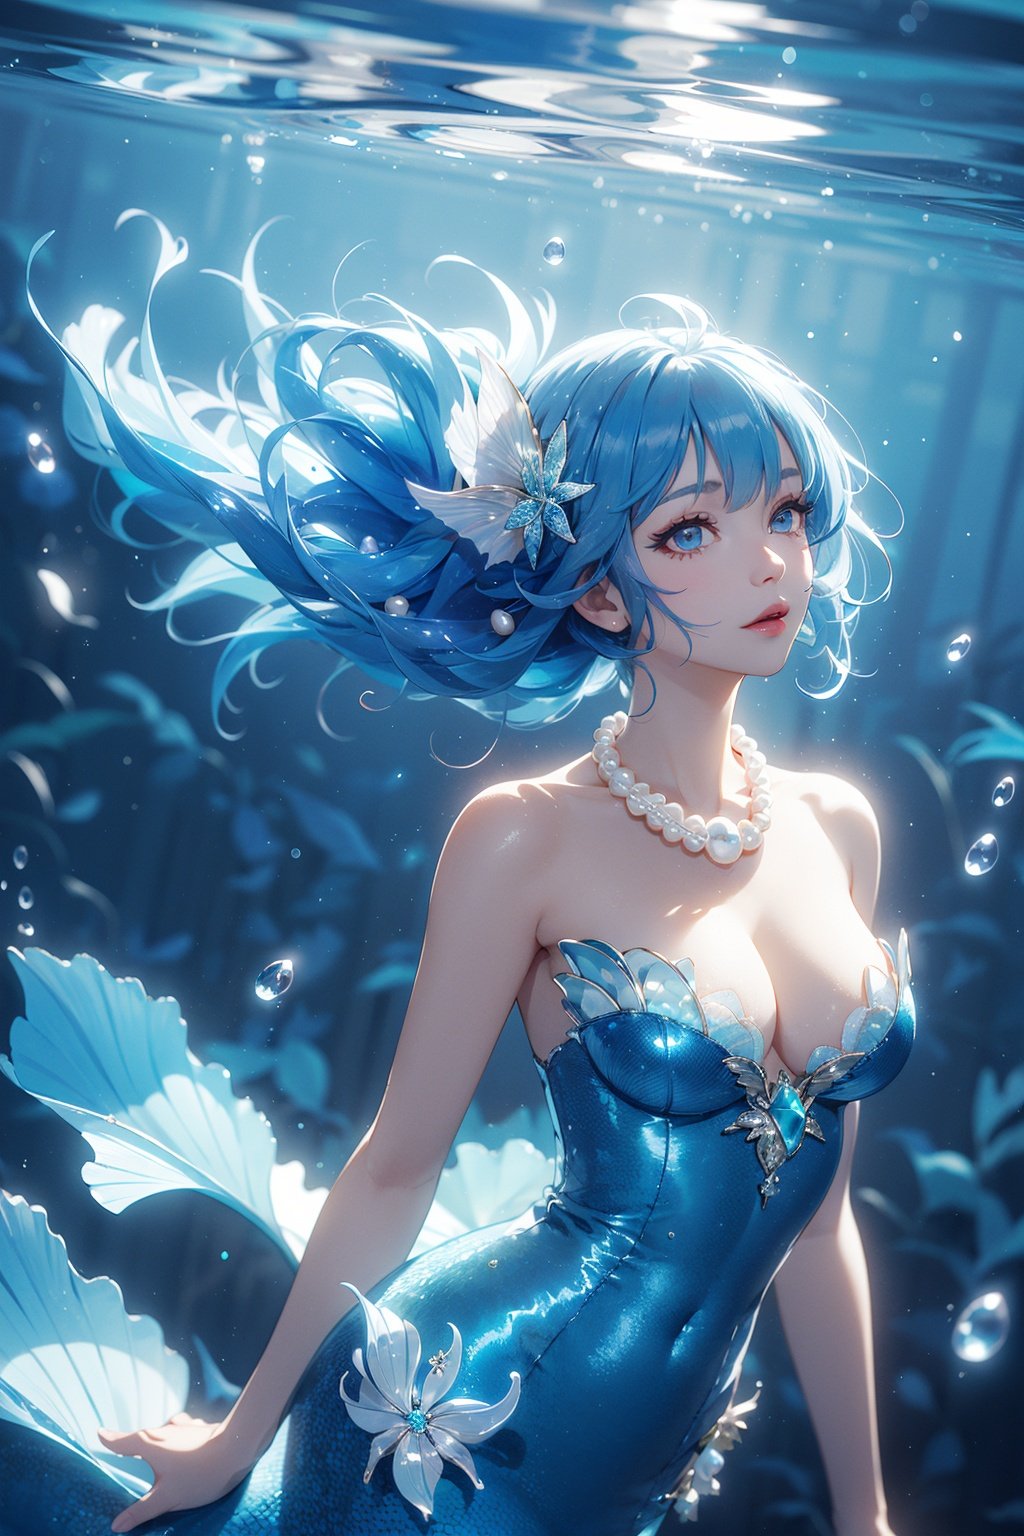 1girl, mermaid,  (blue hair, curly hair, floating hair), shell hair ornament, pearl hair ornament, pearl necklace, underwater,